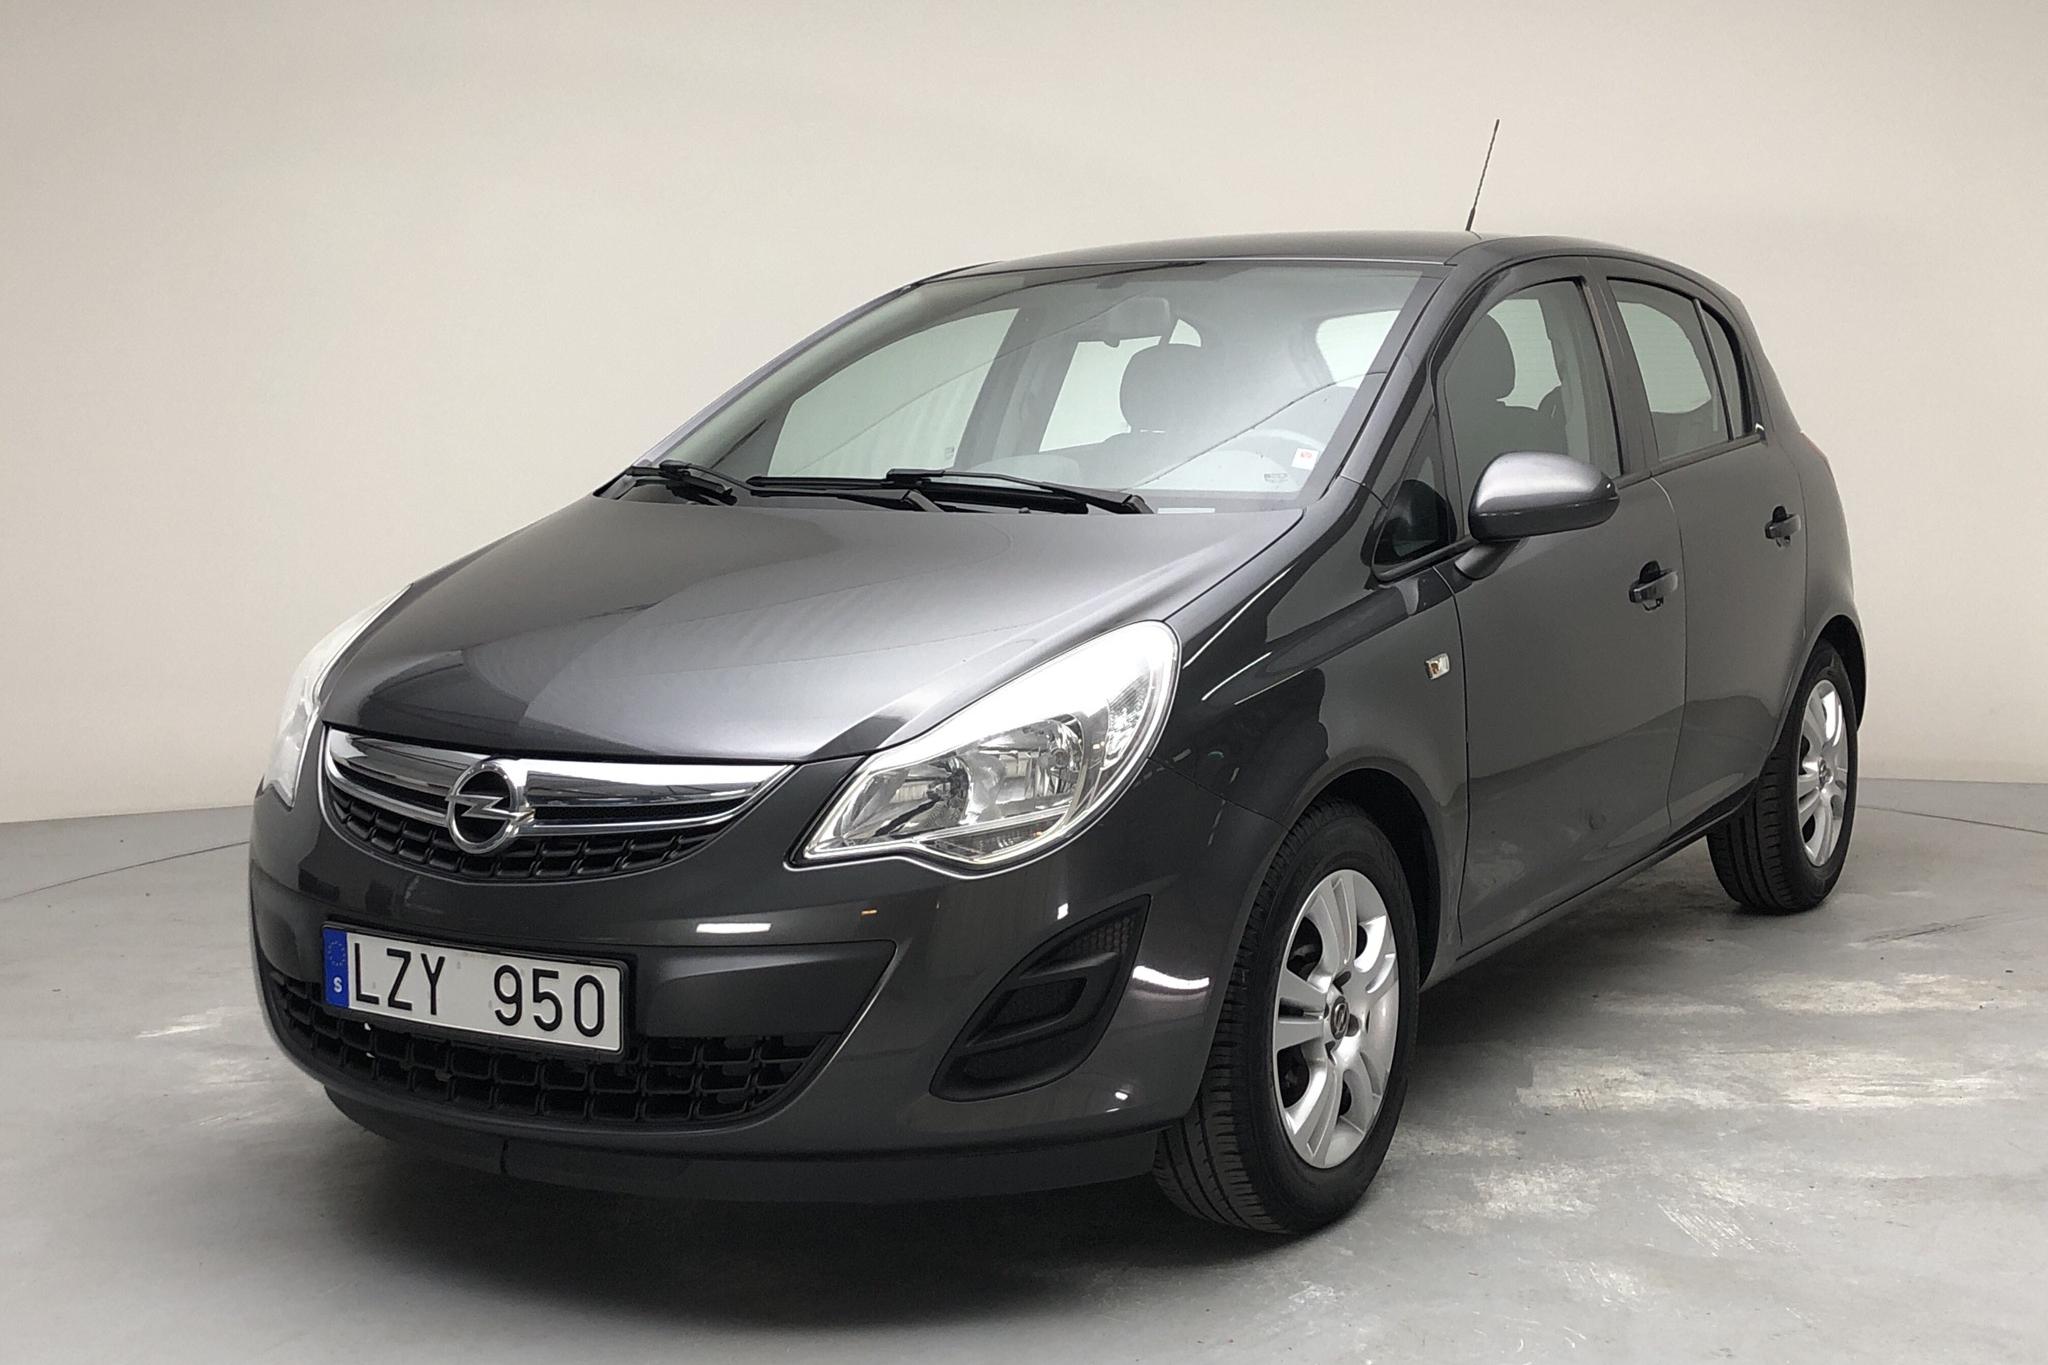 Opel Corsa 1.2 Twinport 5dr (85hk) - 9 969 mil - Manuell - grå - 2012